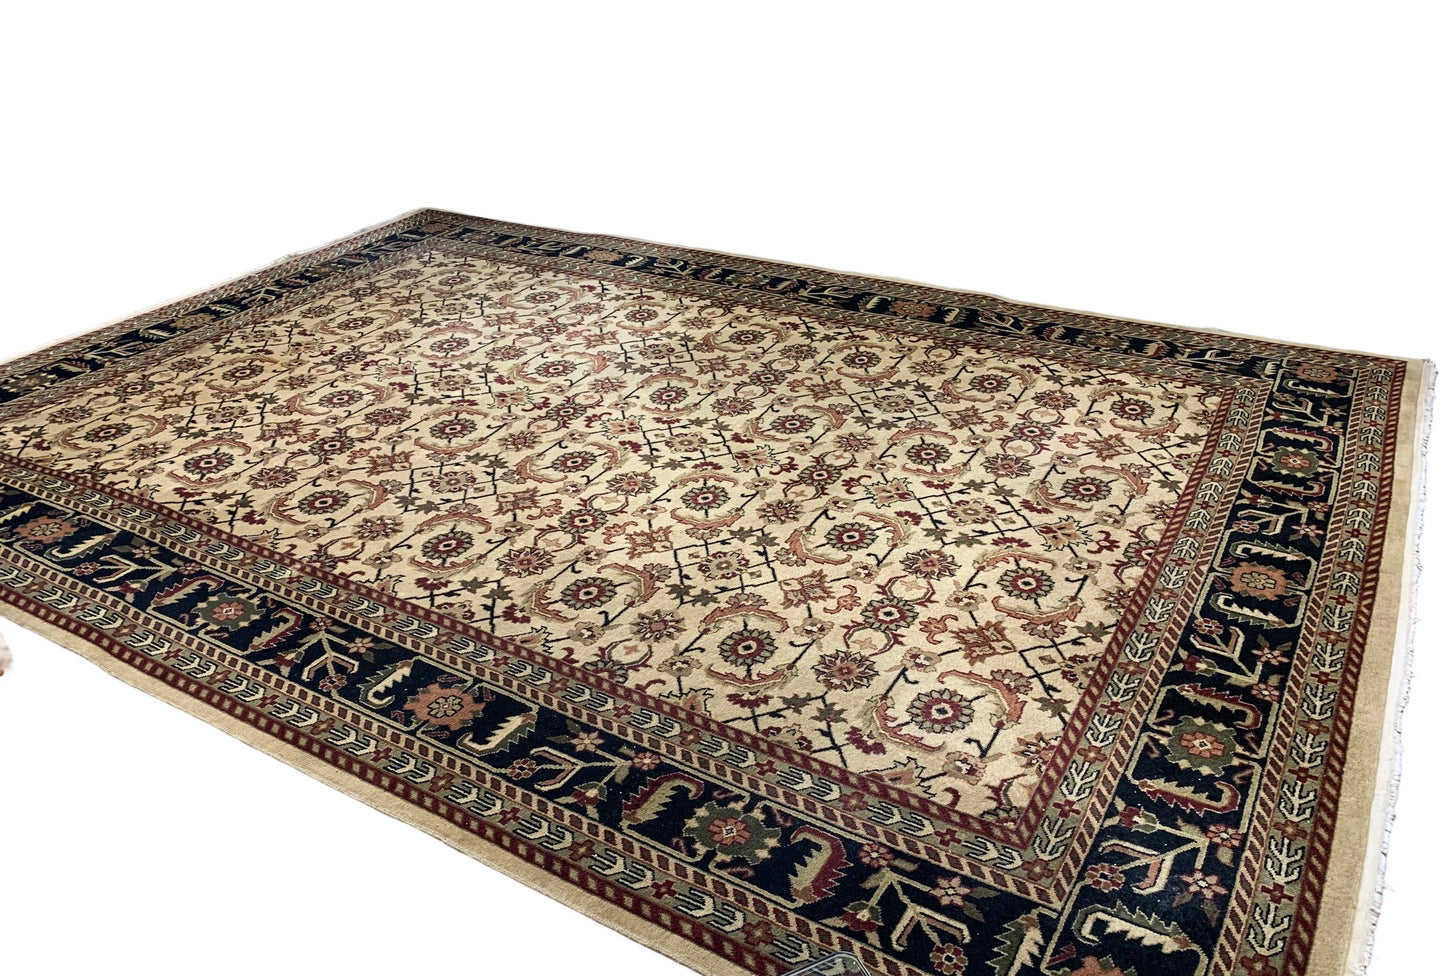 10' x 14' brown/beige/sage green wool Oriental rug